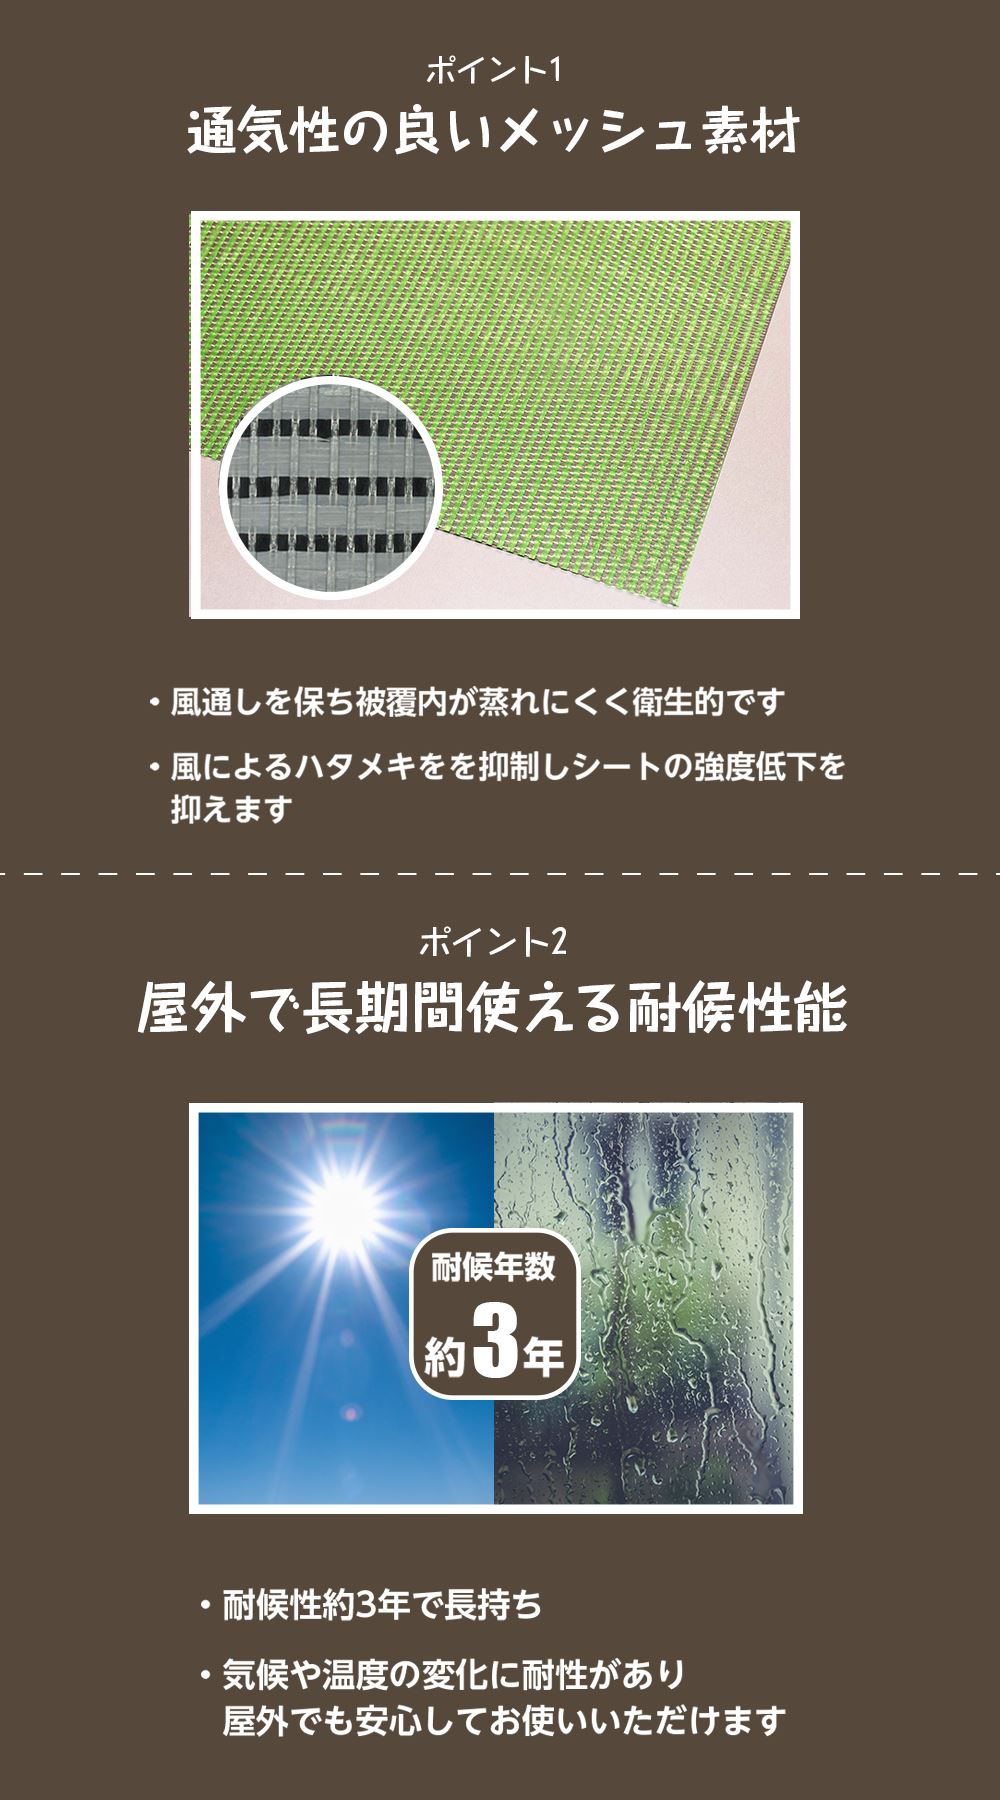 野球ネット(黒・白・茶・青・シルバー) 3.6m×1.8m